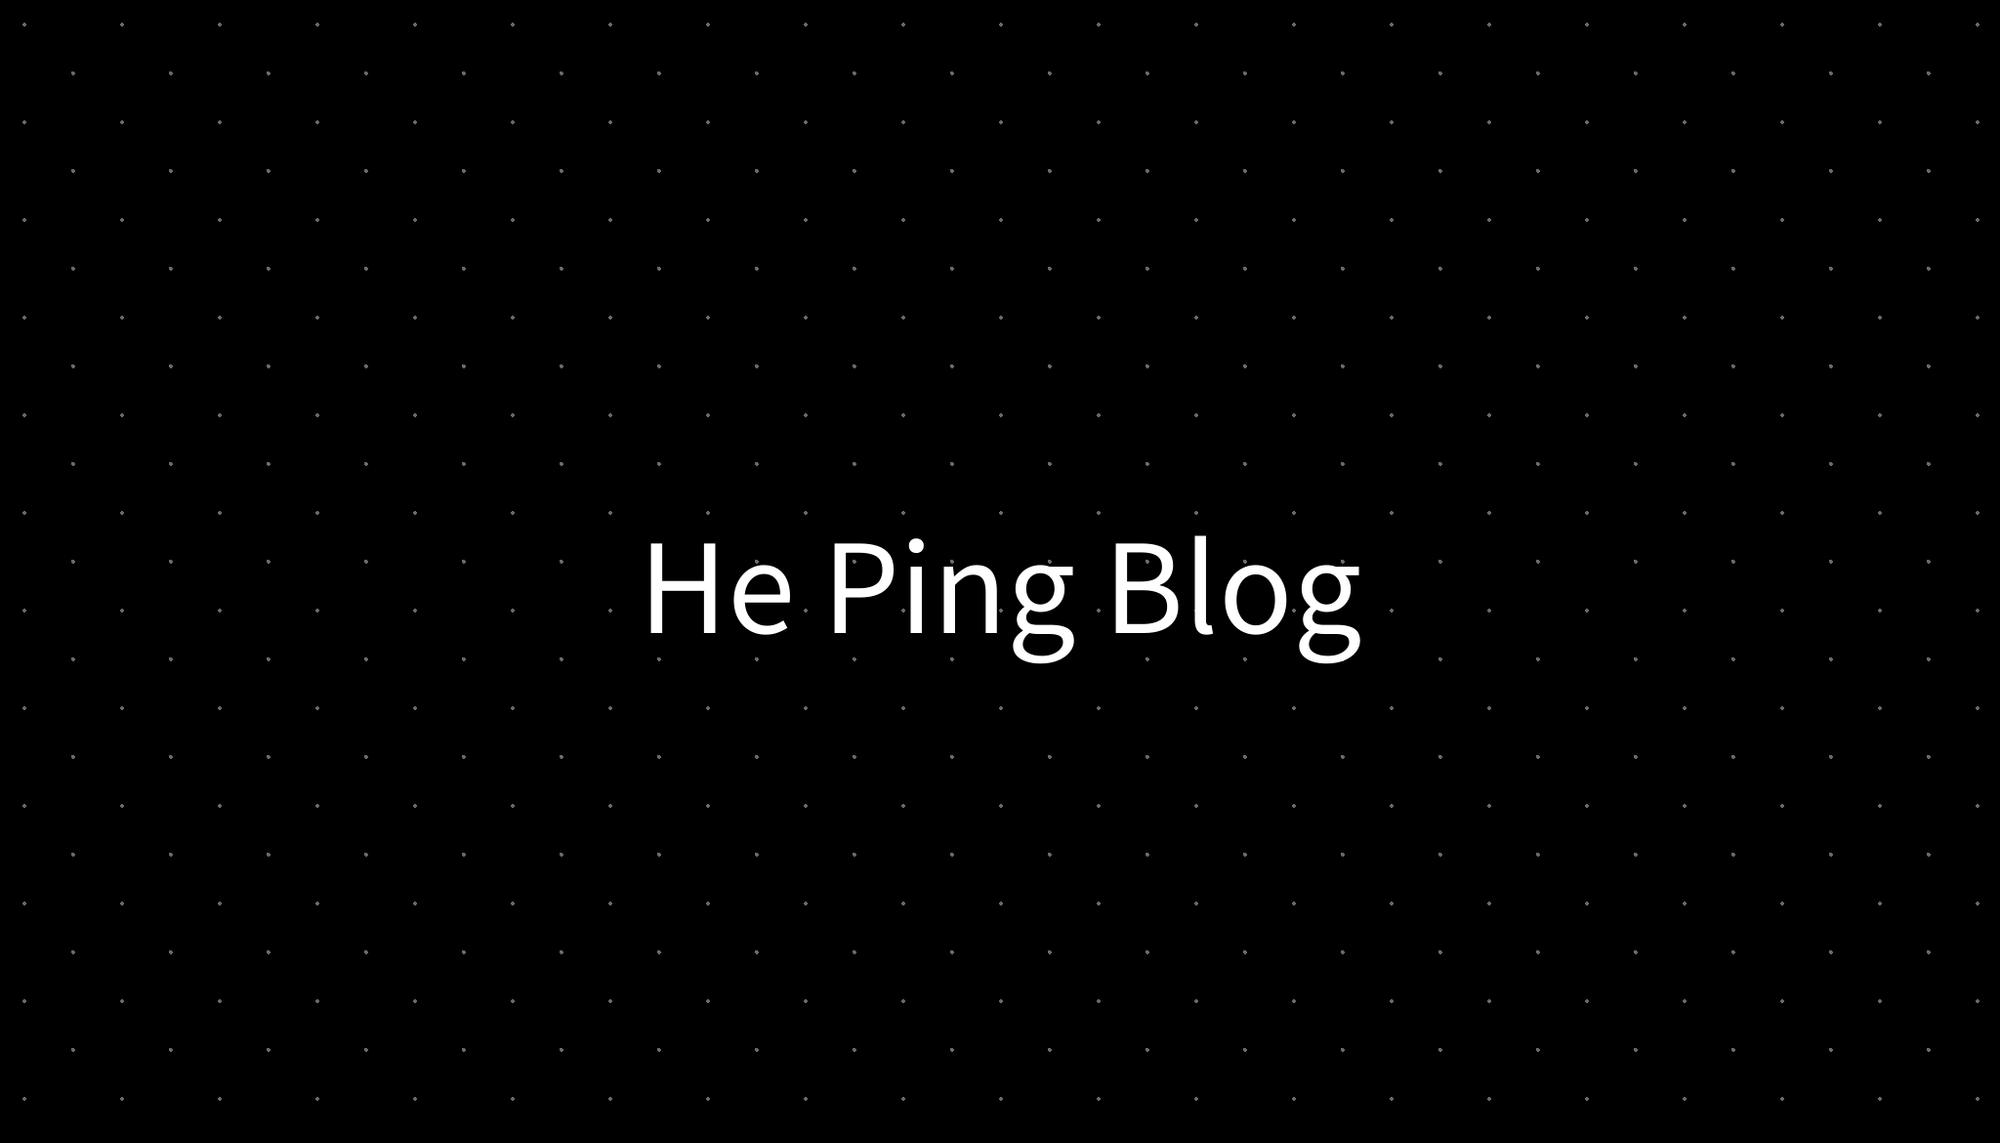 He Ping Blog